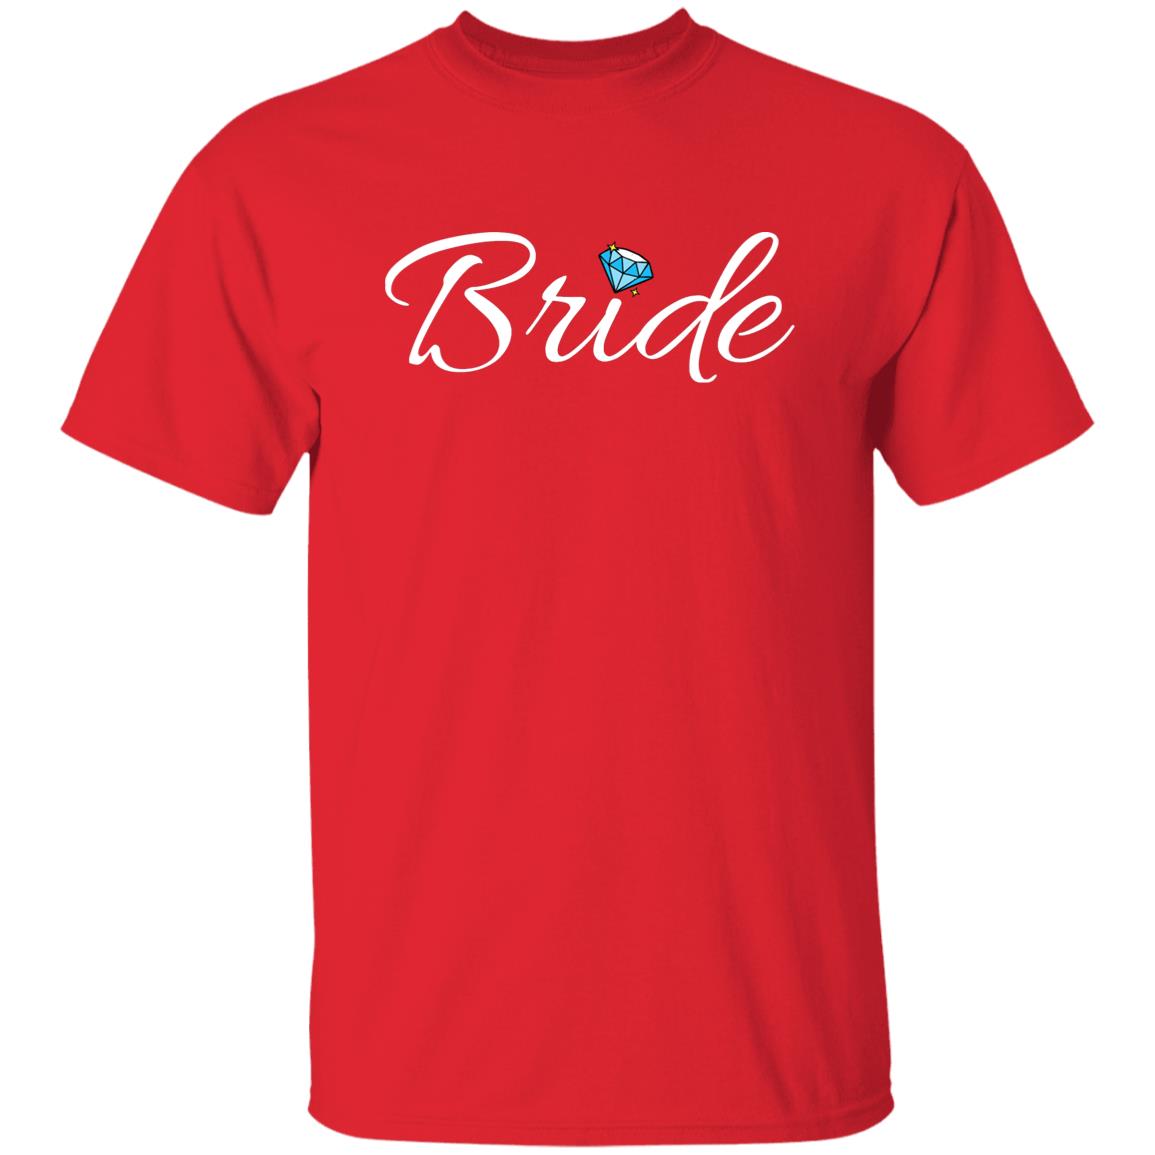 Bride (White Print) G500 5.3 oz. T-Shirt